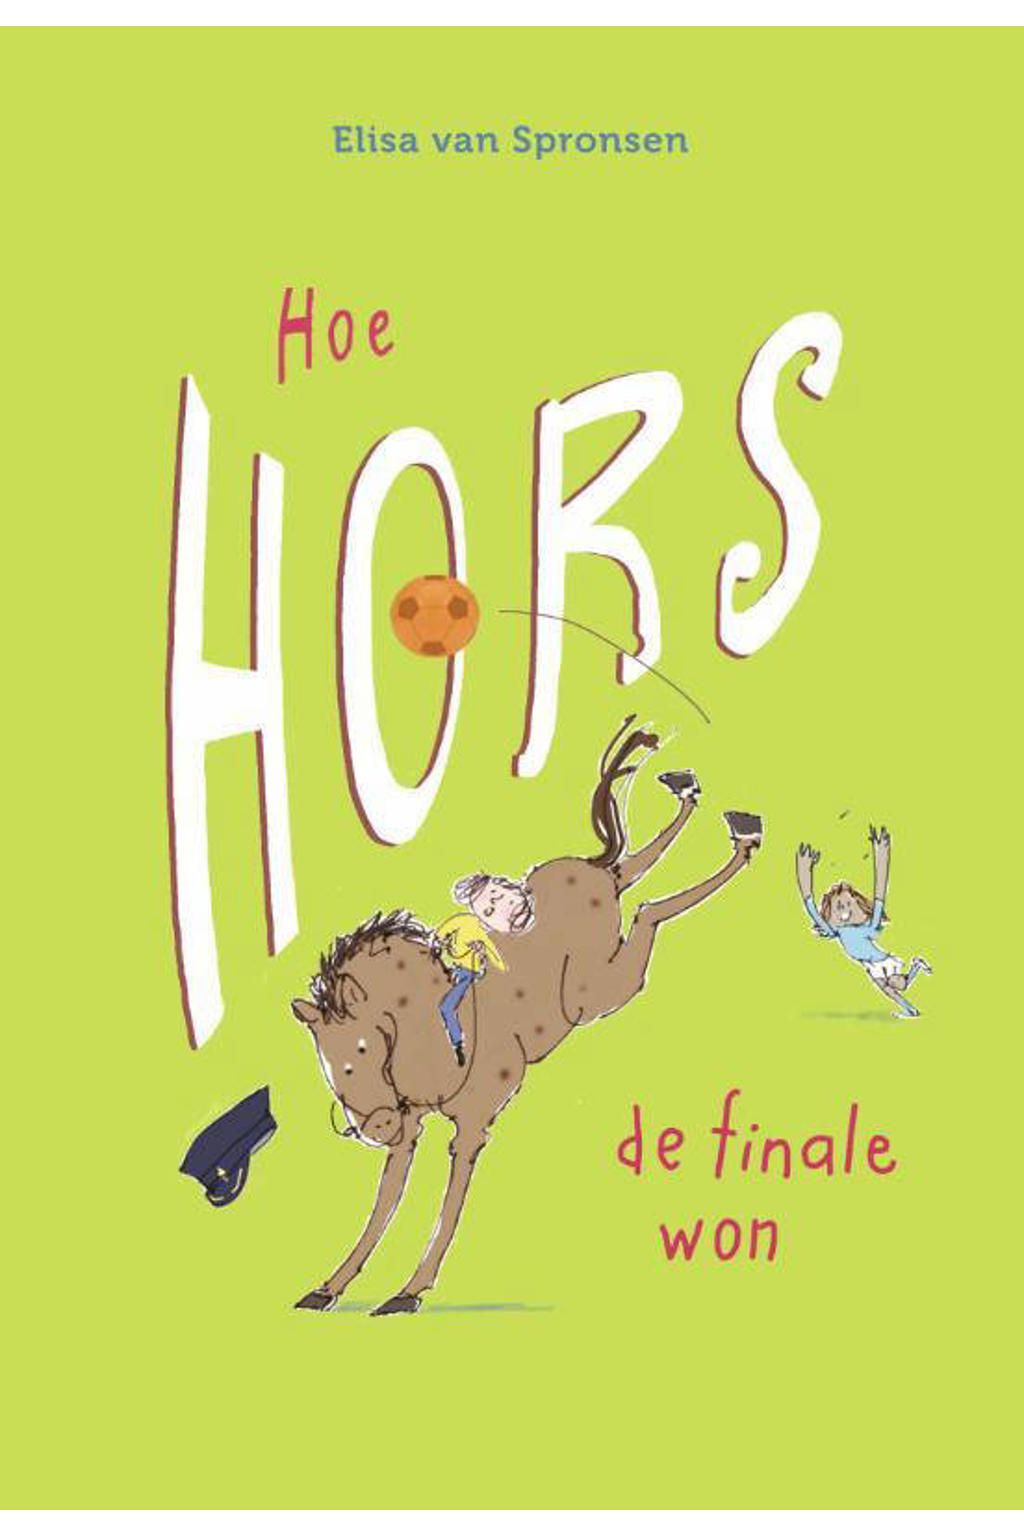 Hors: Hoe Hors de finale won - Elisa van Spronsen